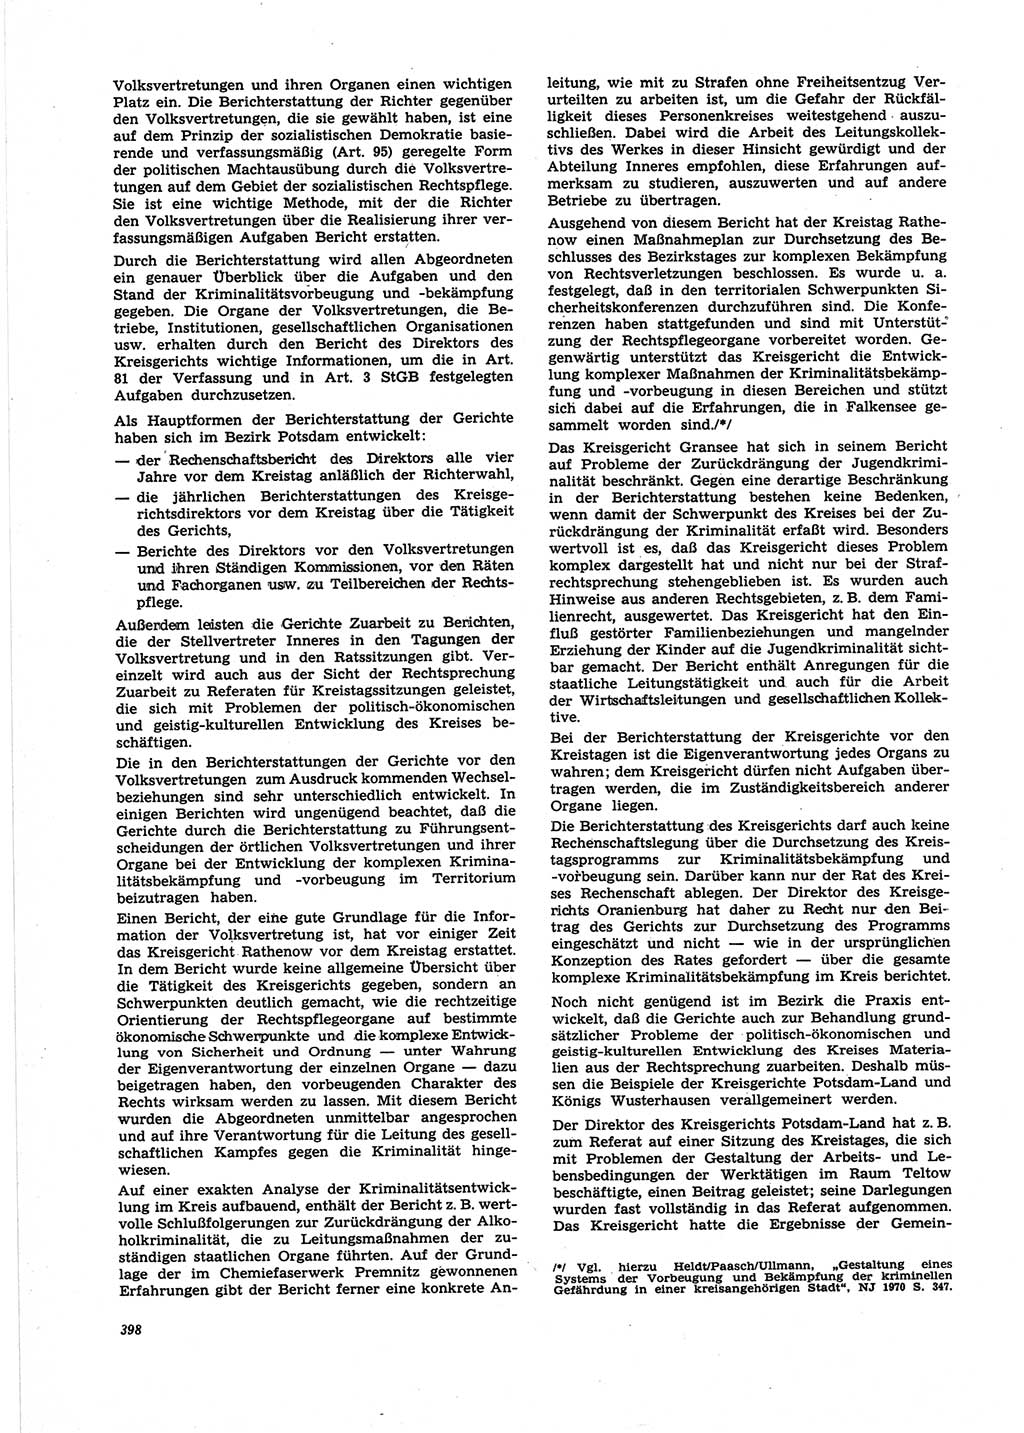 Neue Justiz (NJ), Zeitschrift für Recht und Rechtswissenschaft [Deutsche Demokratische Republik (DDR)], 25. Jahrgang 1971, Seite 398 (NJ DDR 1971, S. 398)